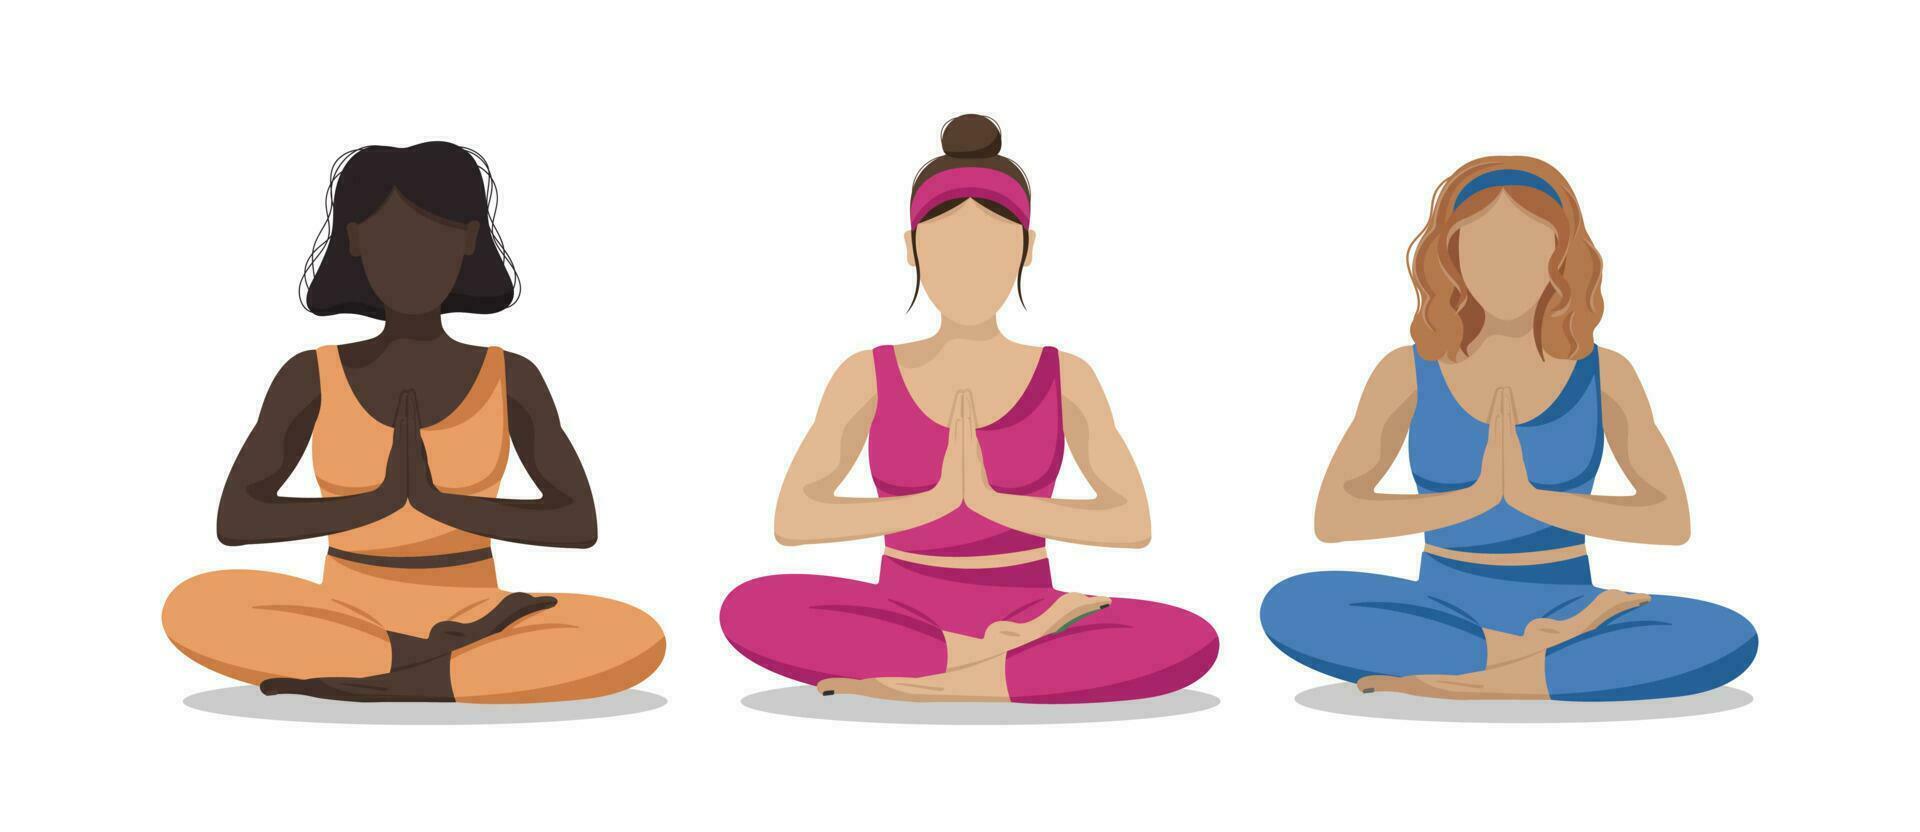 sport squadra di senza volto donne seduta nel loto yoga asana posa. mentale Salute, emozioni controllo e personale armonia concetto. tempo per te stesso. vettore piatto illustrazione nel cartone animato stile.